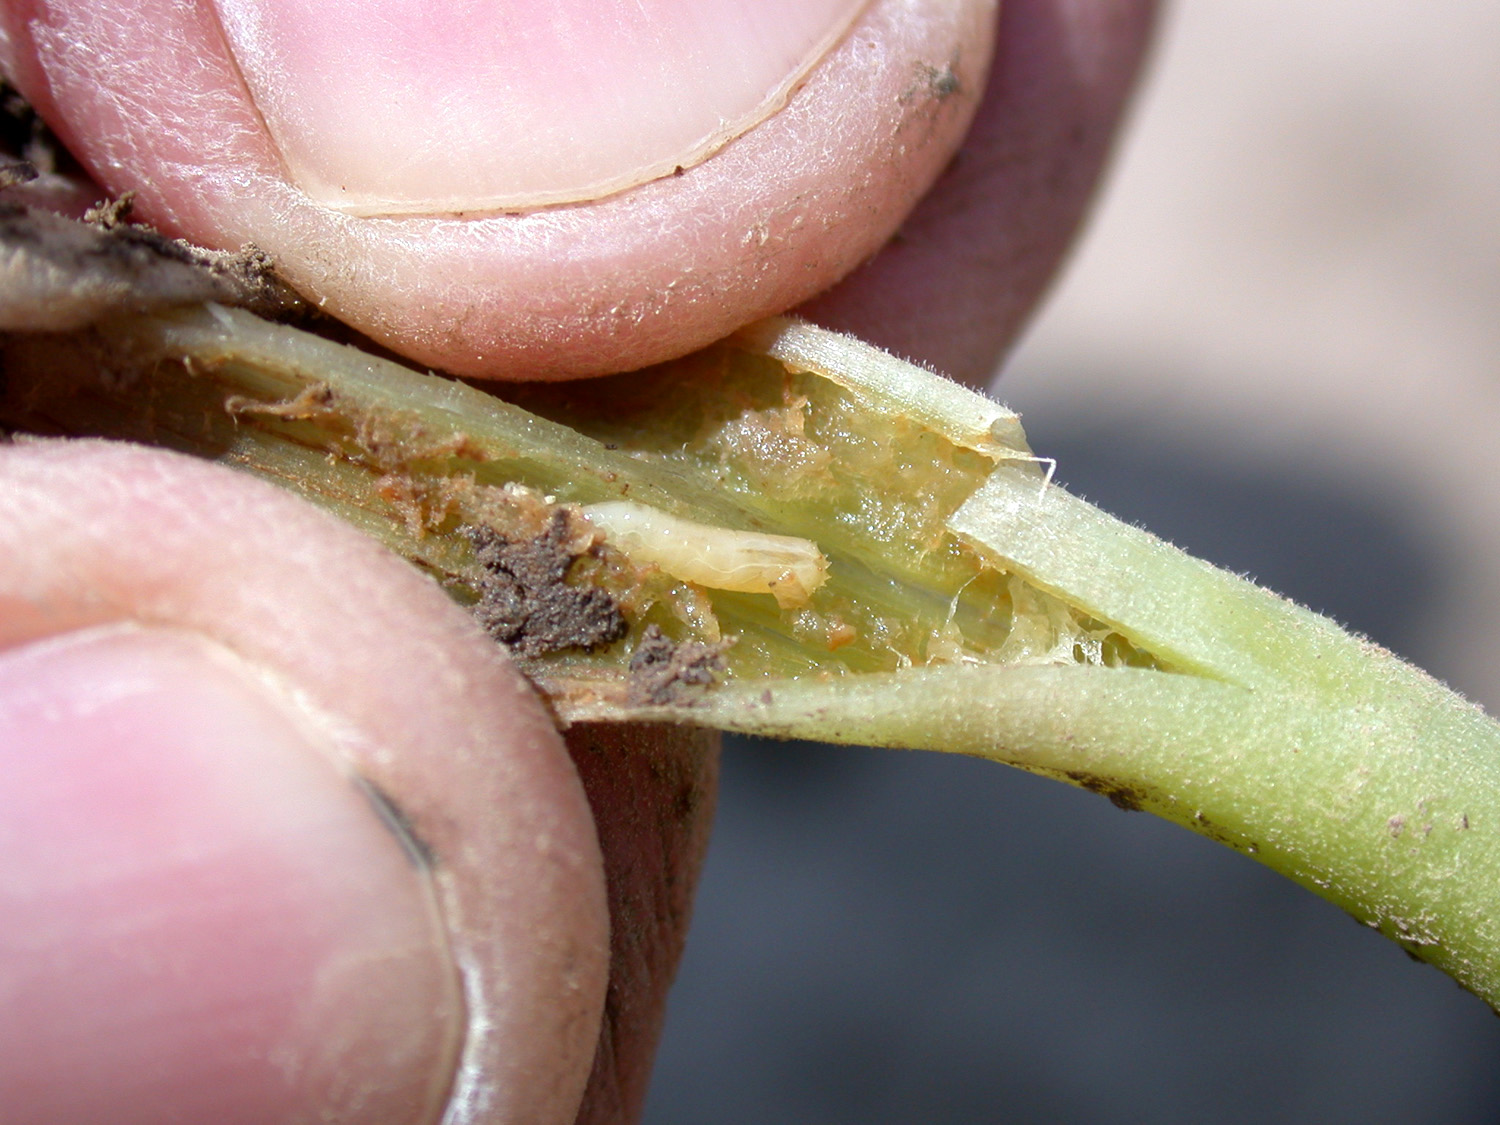 Seedcorn maggot in green bean stem